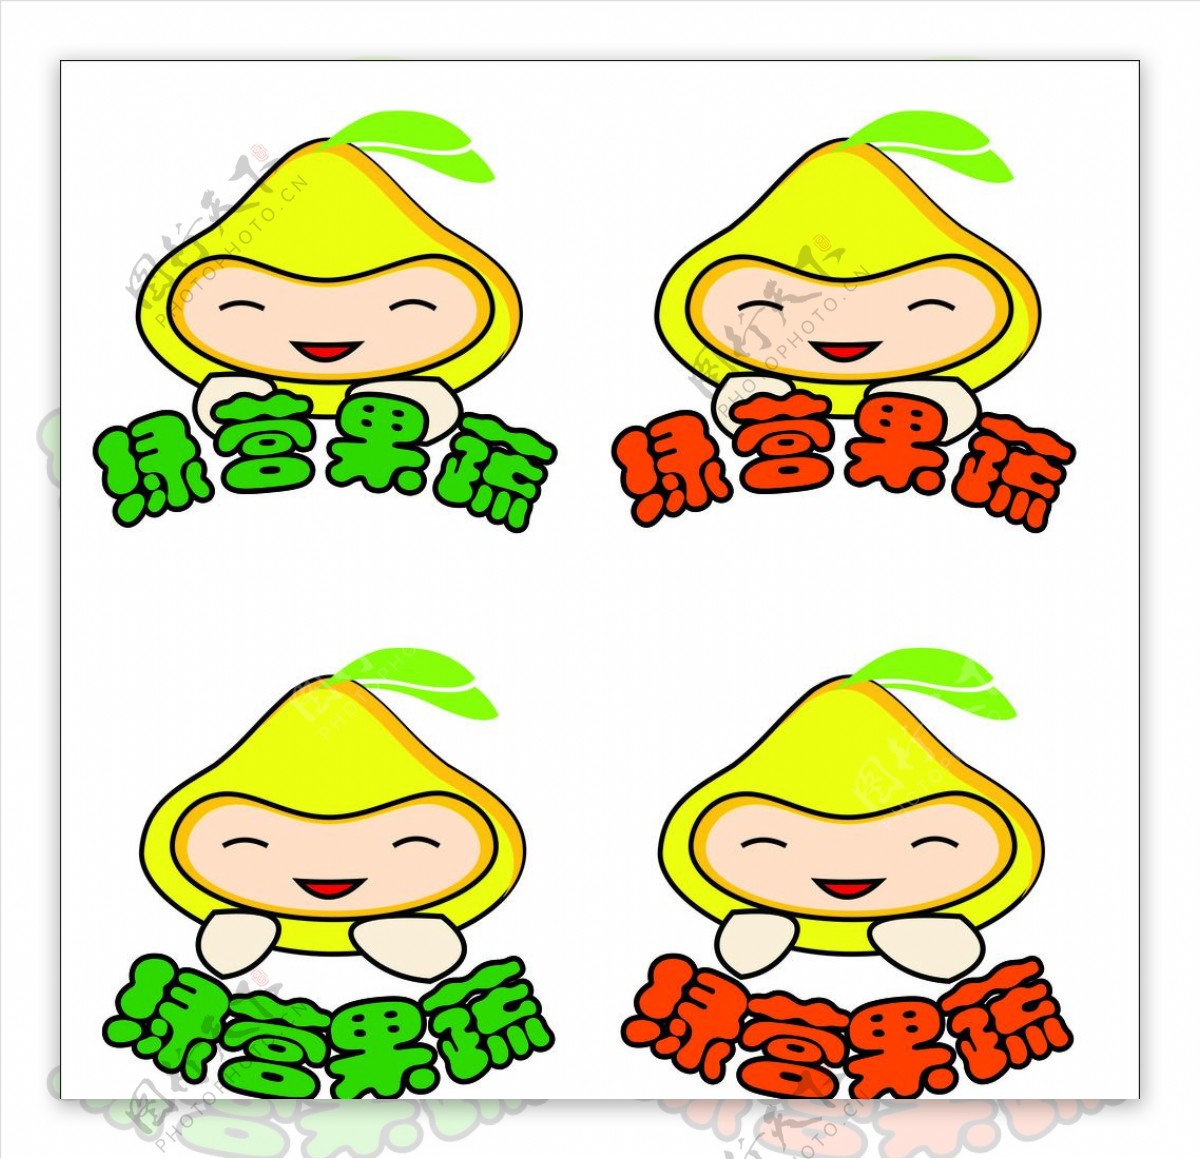 果蔬logo